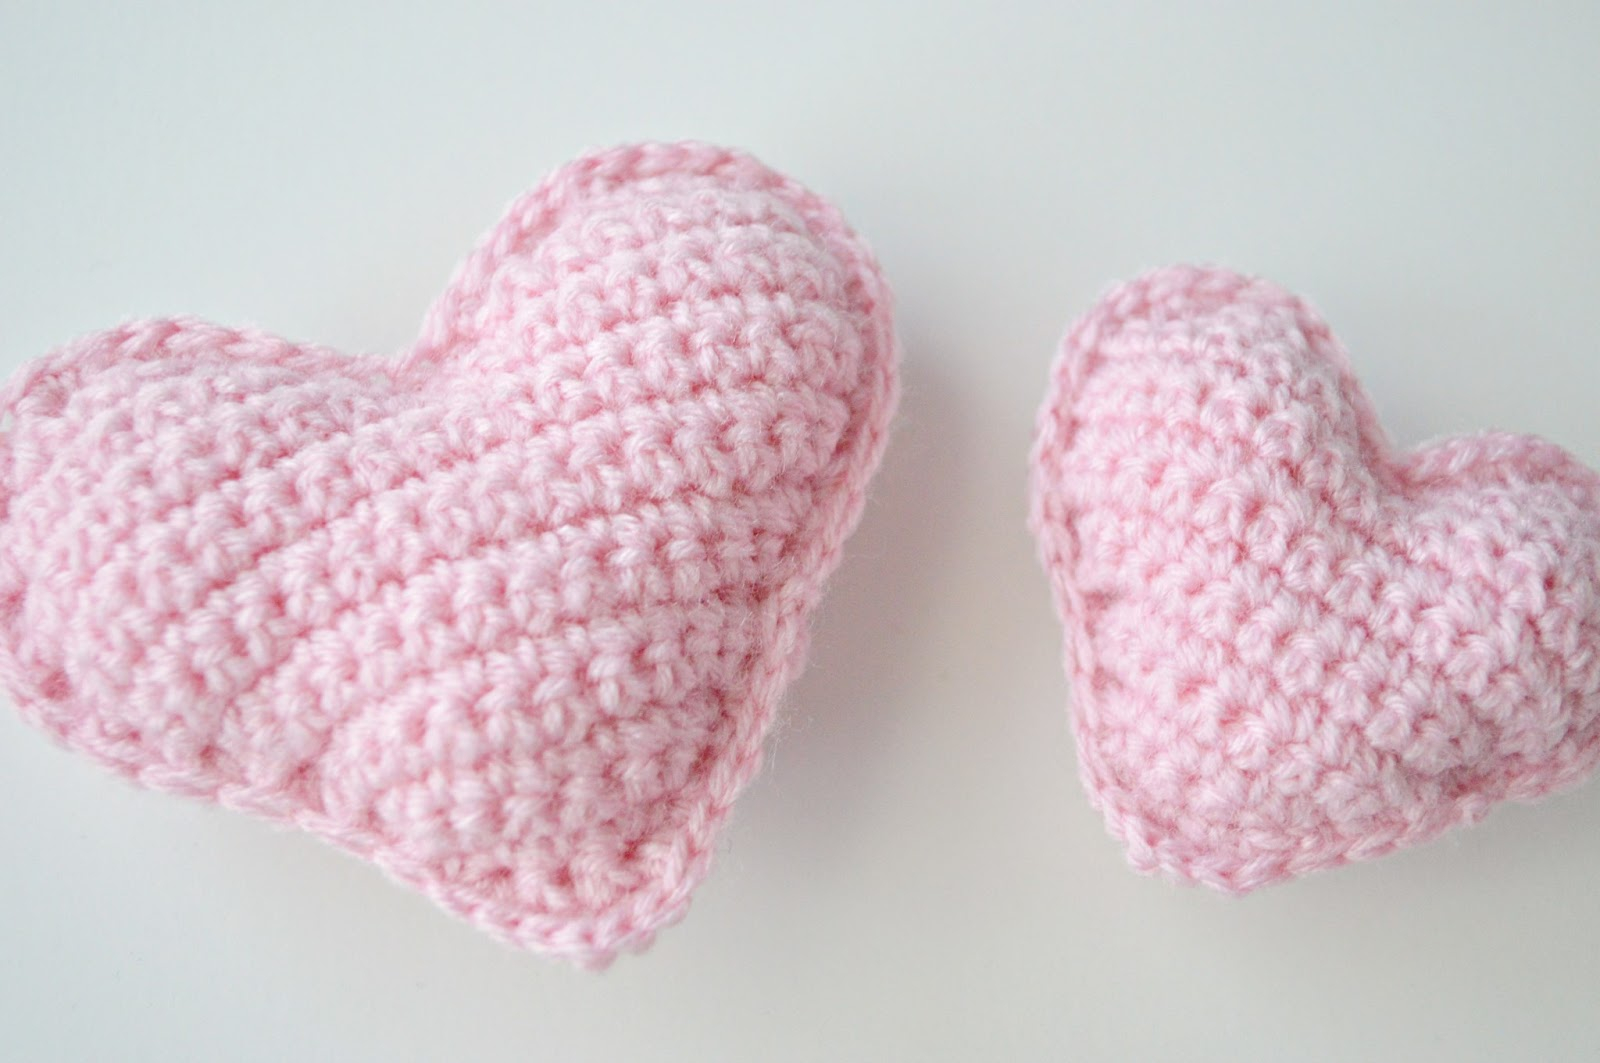 Crochet Heart Patterns Crochet Stuffed Hearts